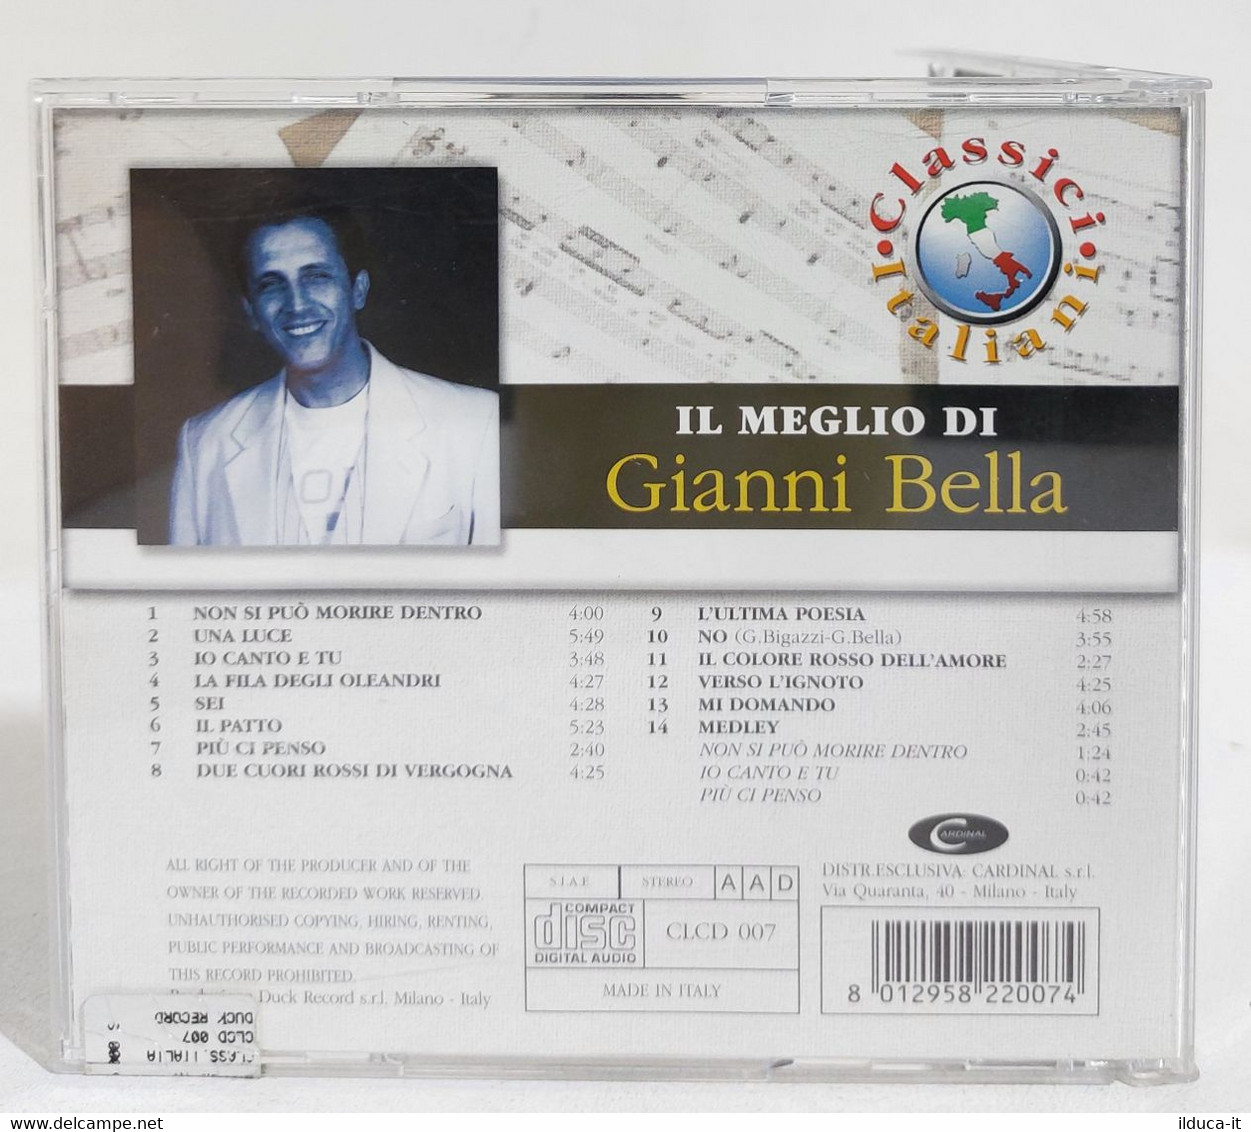 I107685 CD - Il Meglio Di Gianni Bella - Duck Record - Other - Italian Music